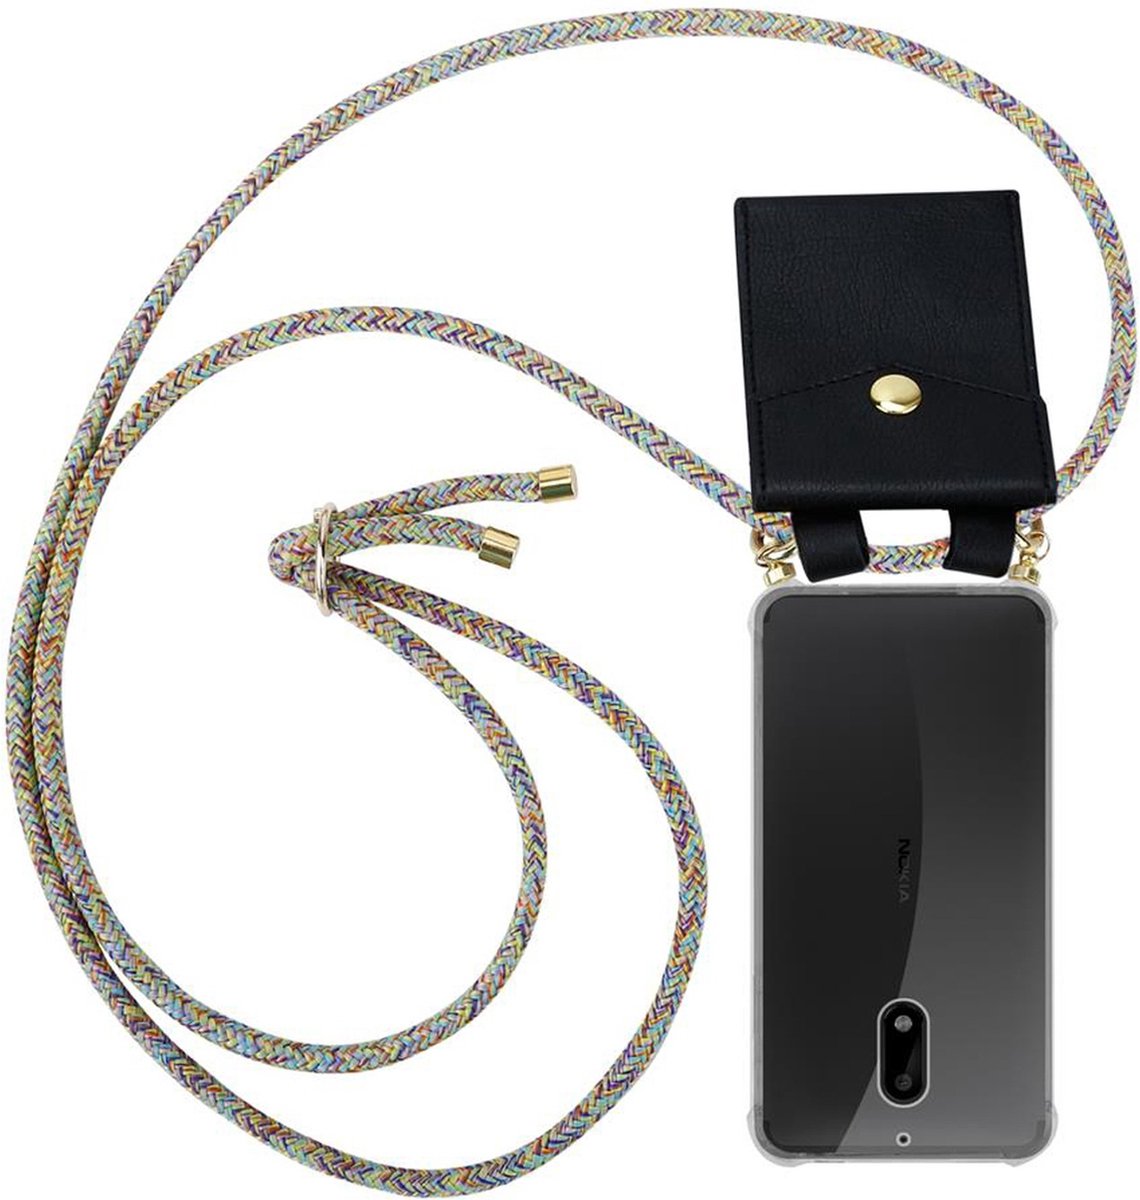 Cadorabo Mobiele telefoon ketting voor Nokia 6 2017 in REGENBOOG - Silicone beschermhoes met gouden ringen, koordriem en afneembare etui